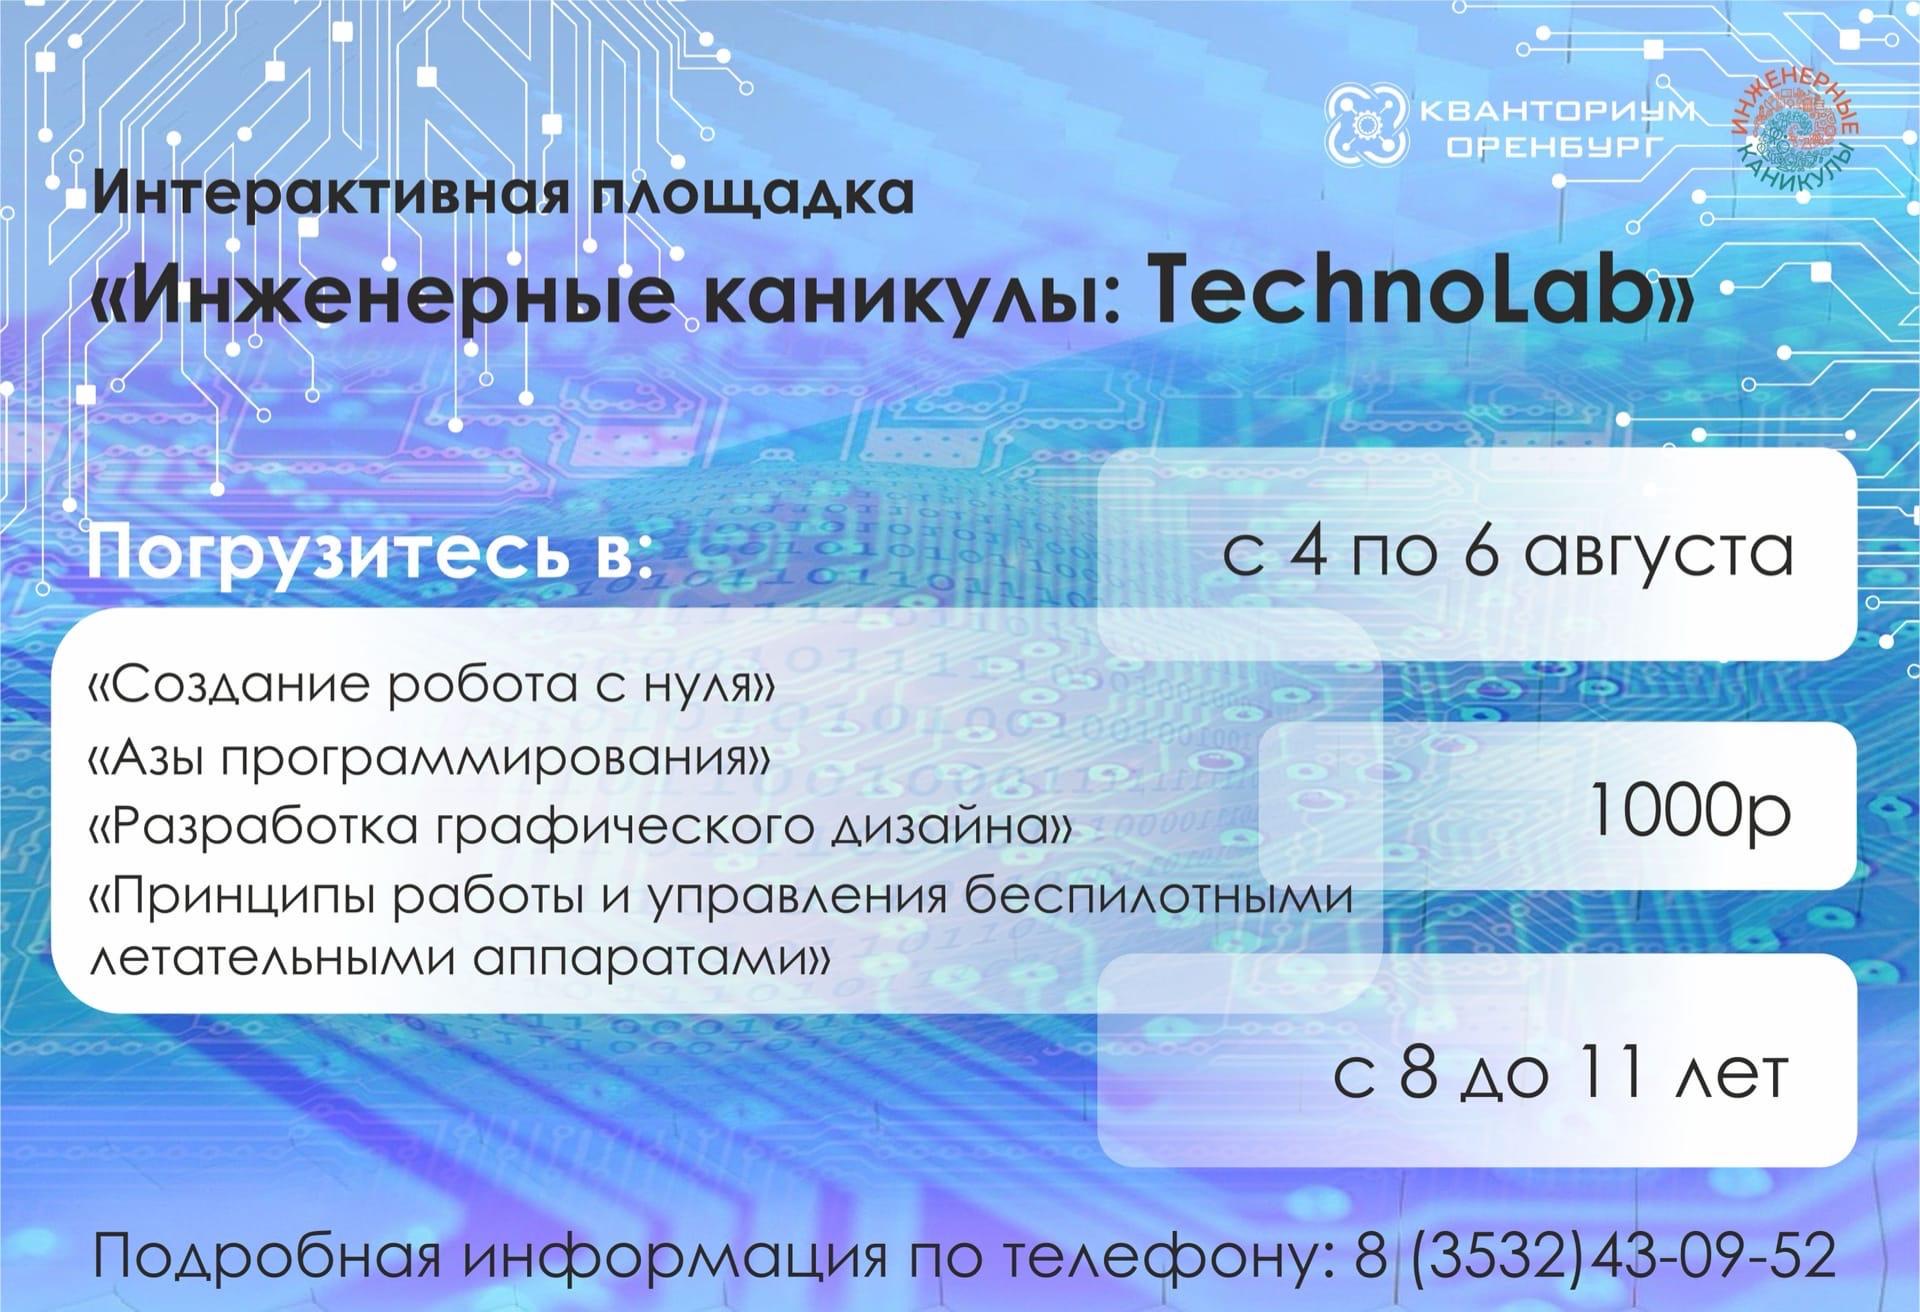 Интерактивная площадка "Инженерные каникулы: TechnoLad" вместе с ДТ "Кванториум"